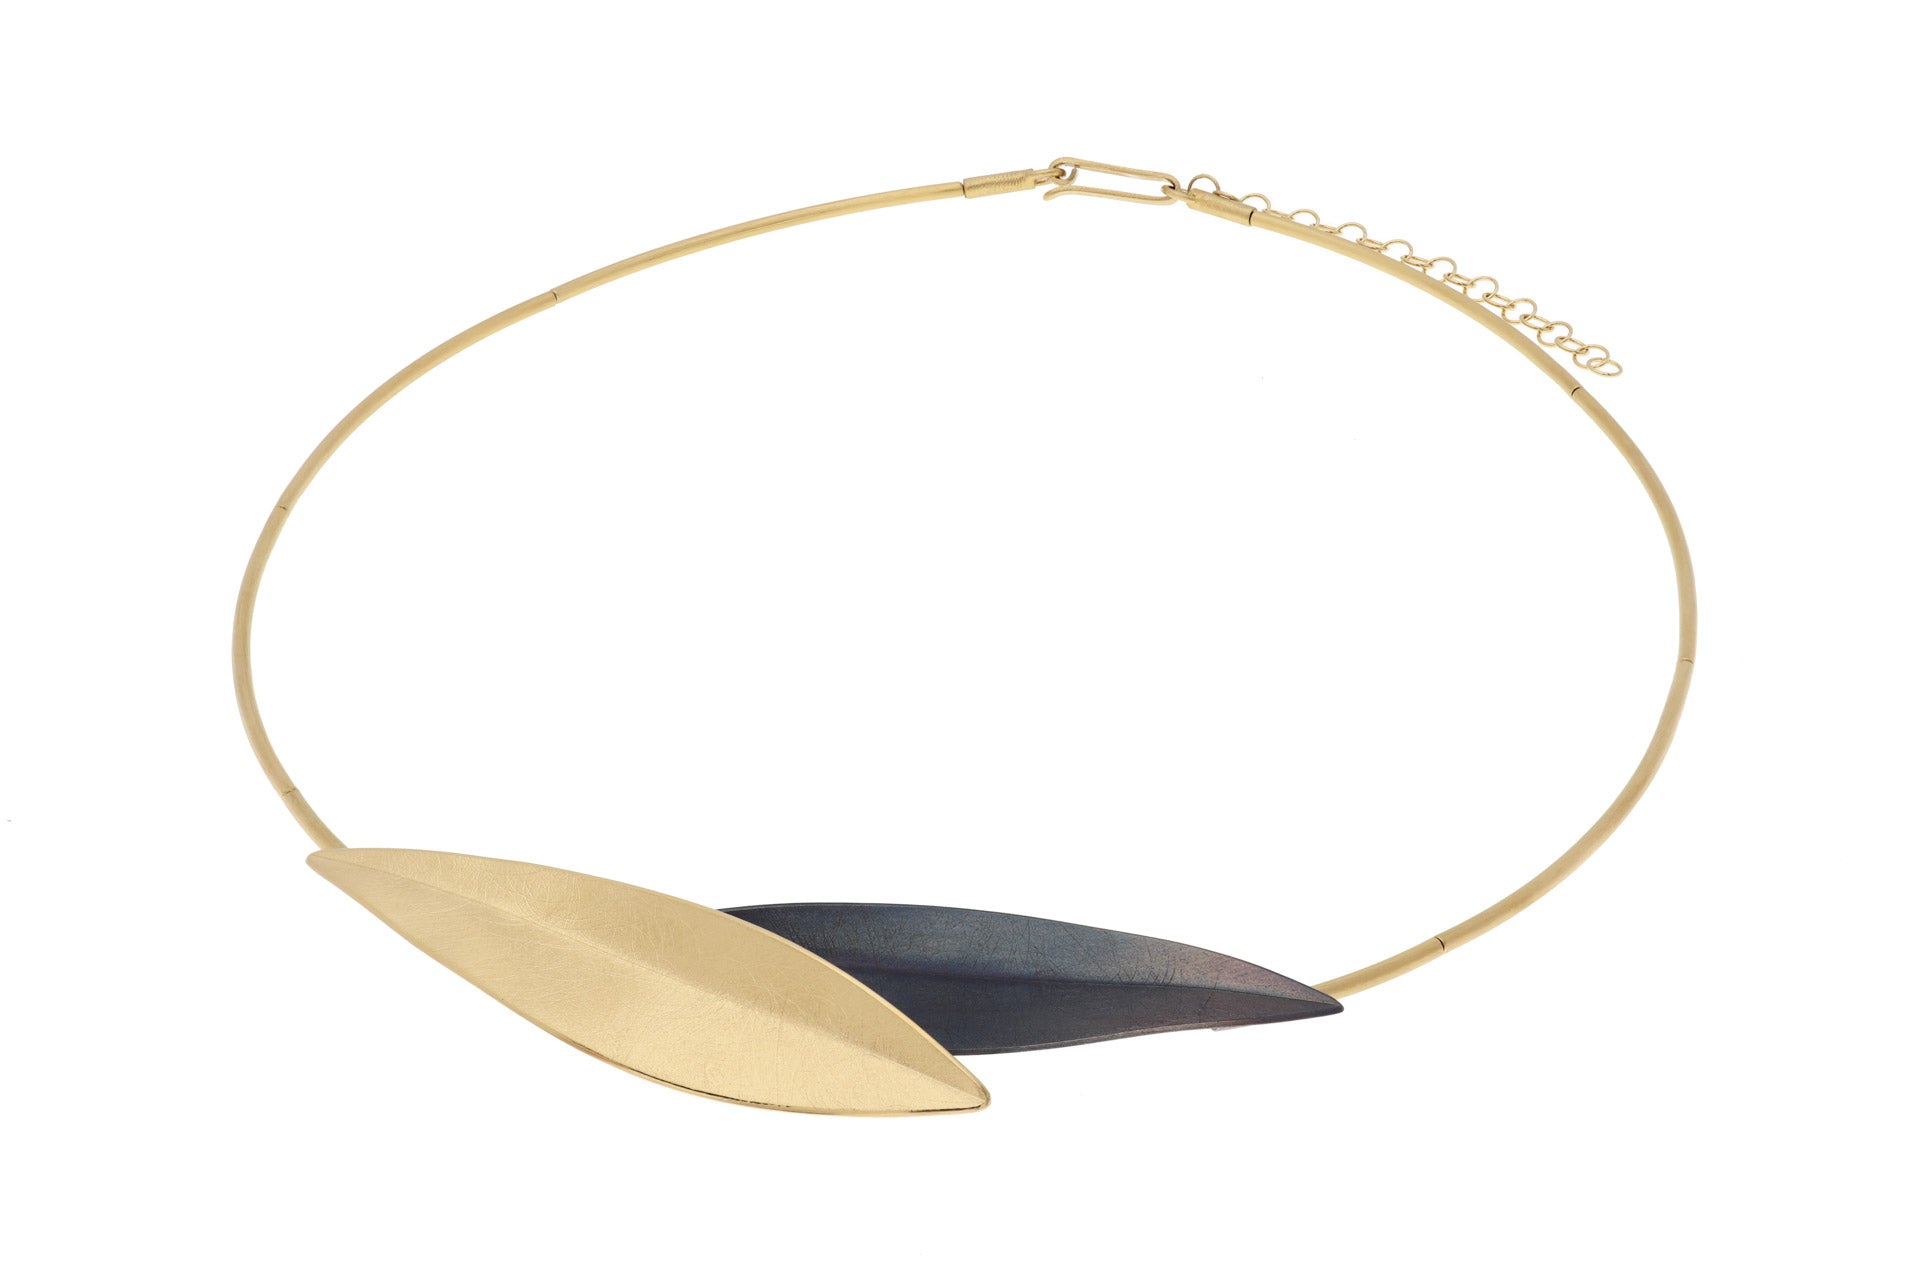 Gold Leaf Necklace - The Nancy Smillie Shop - Art, Jewellery & Designer Gifts Glasgow